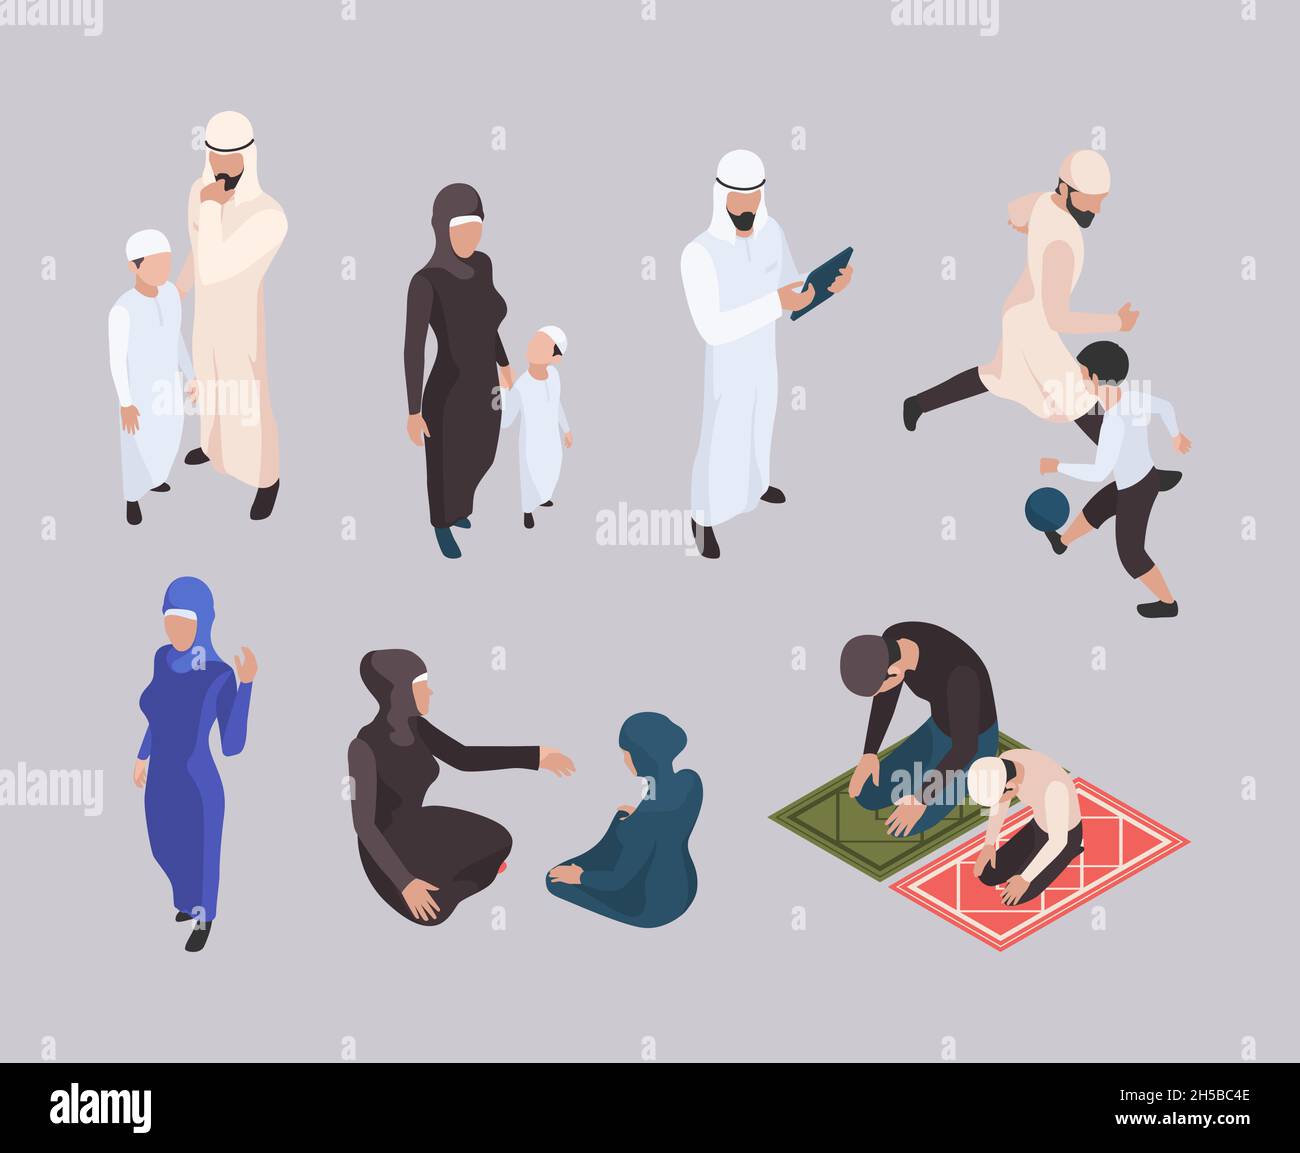 Famille arabe.Les peuples isométriques de l'est dans le hijab les vêtements musulmans traditionnels garish les personnes vecteurs Illustration de Vecteur